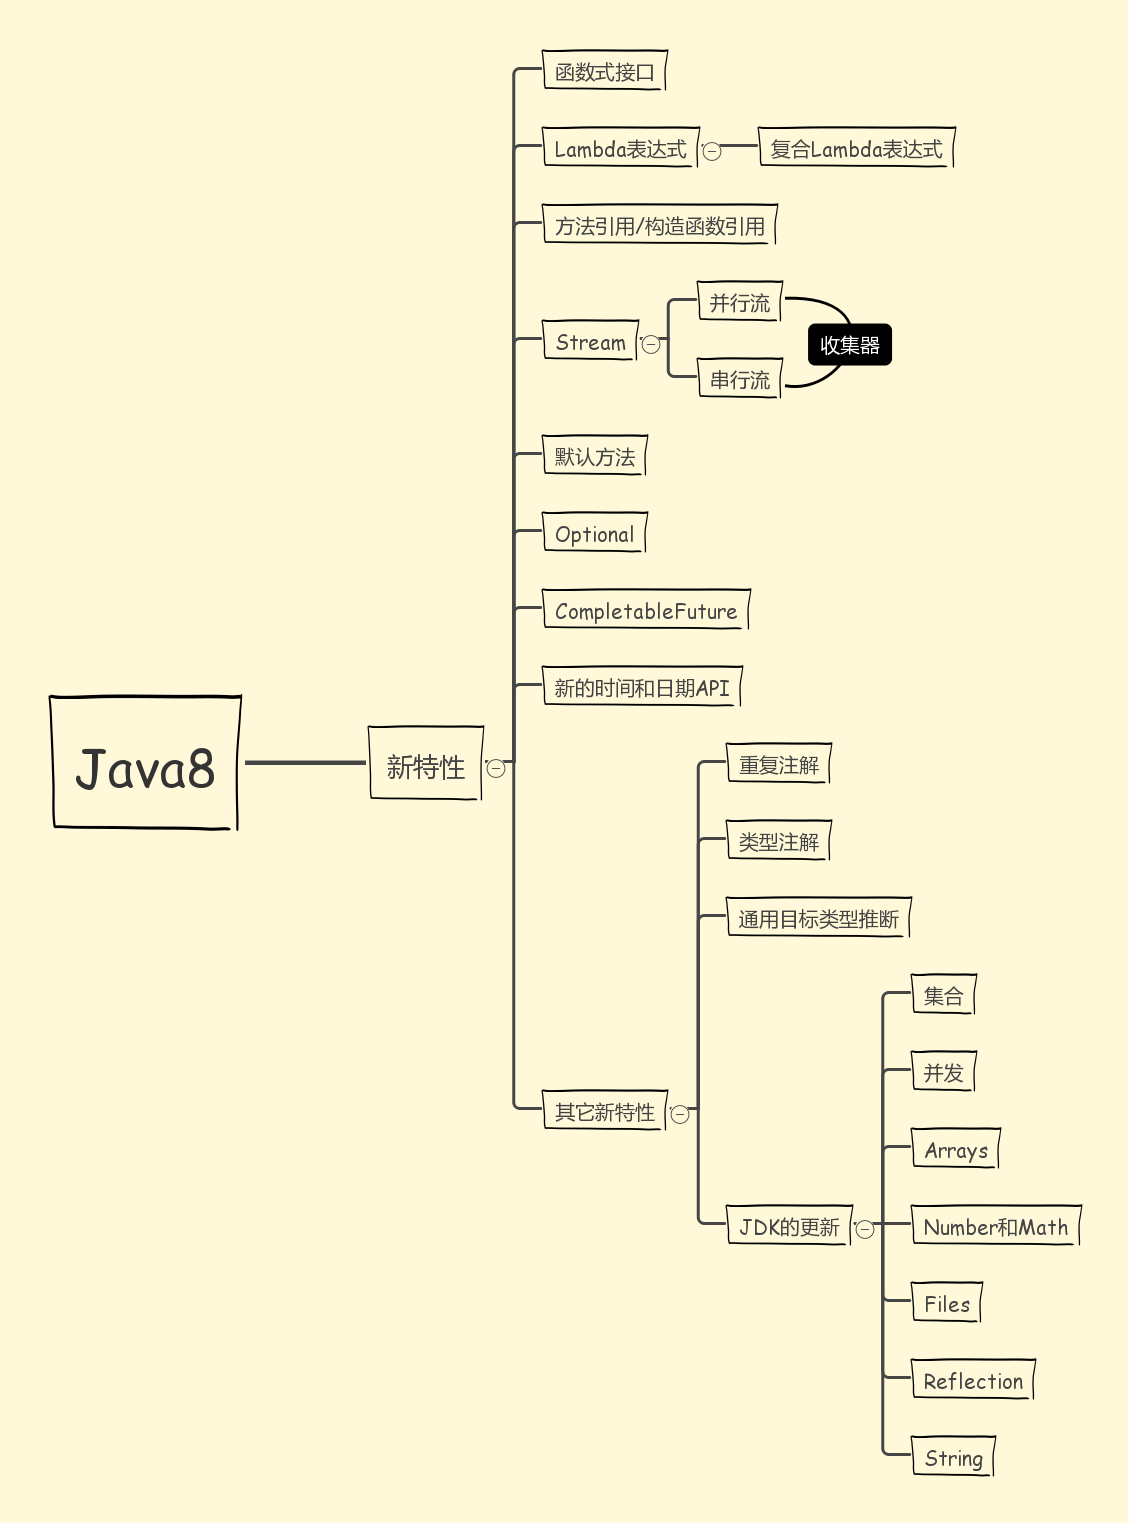 Java8